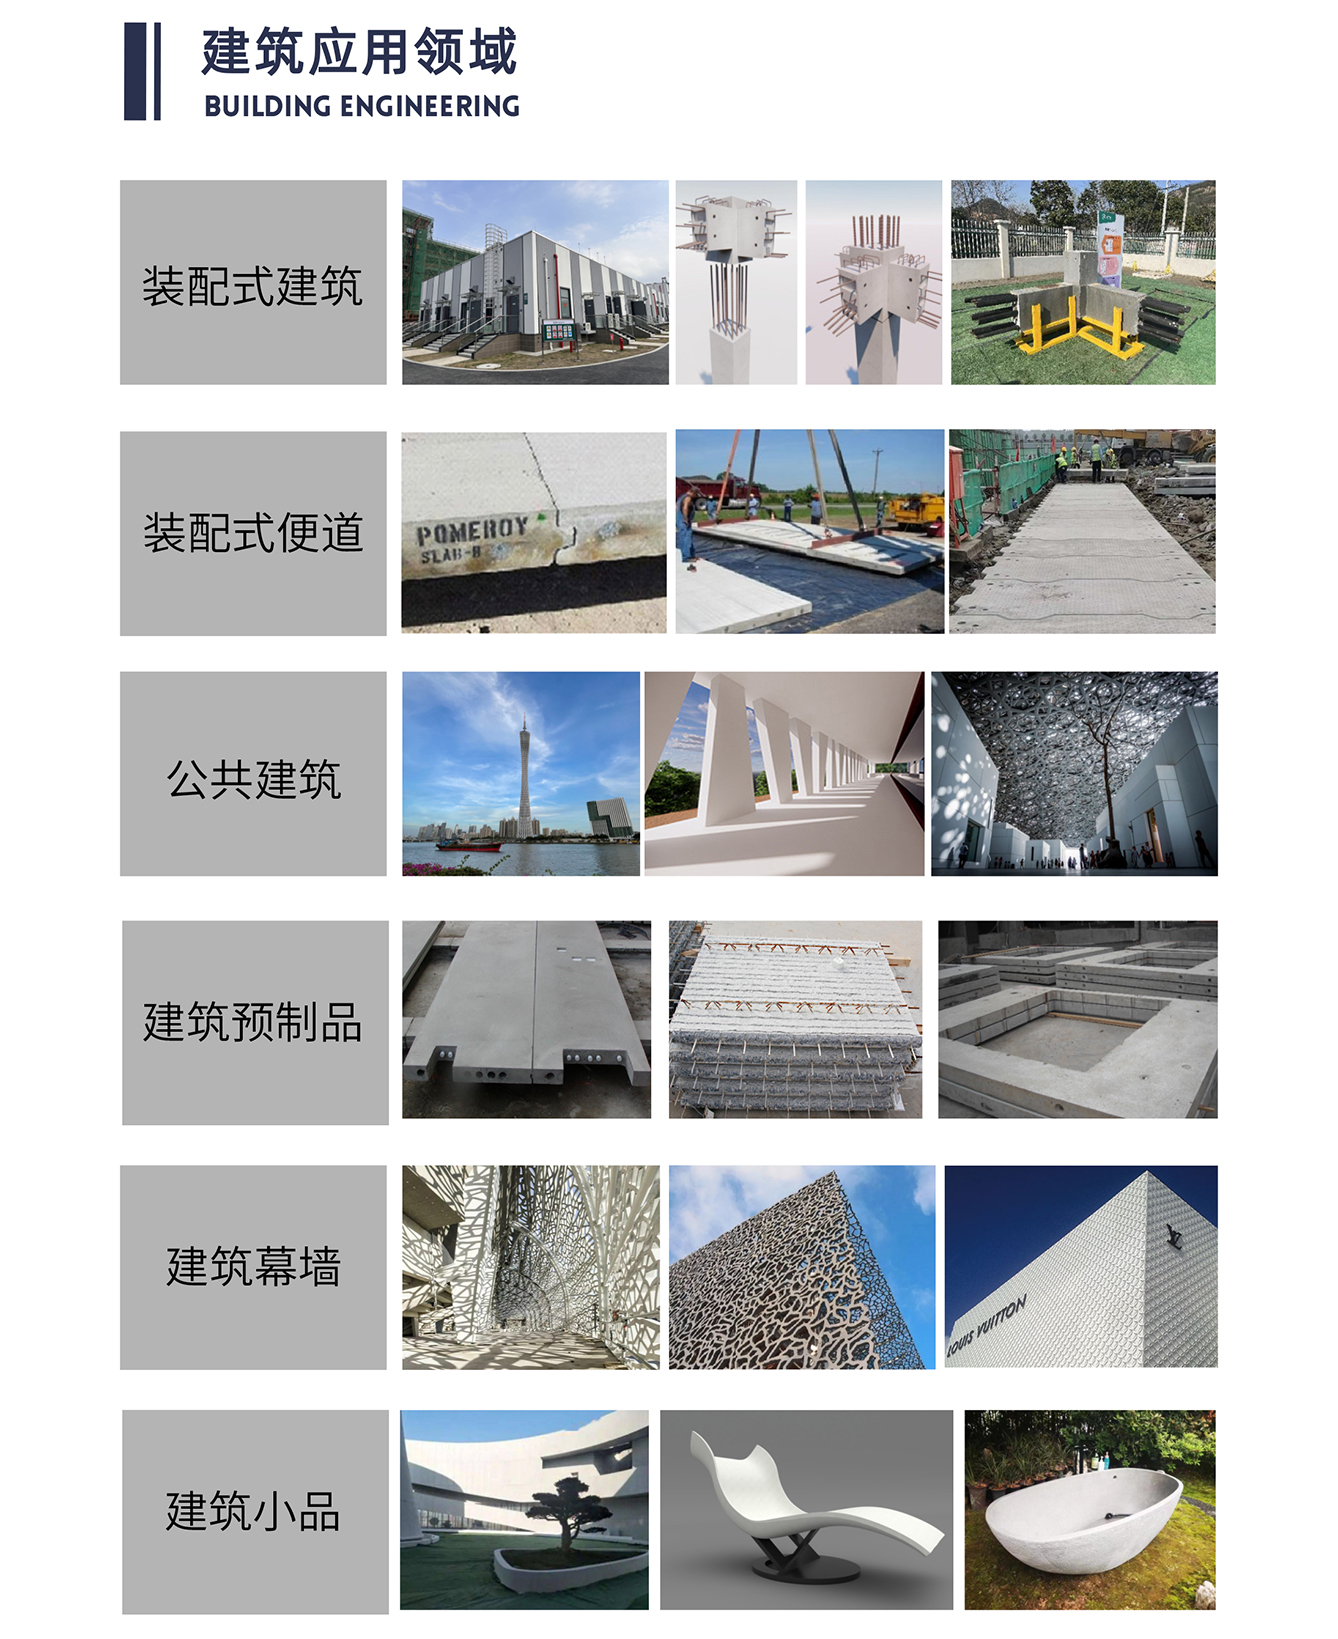 宏日泰耐克企業宣傳冊7.11-20.jpg